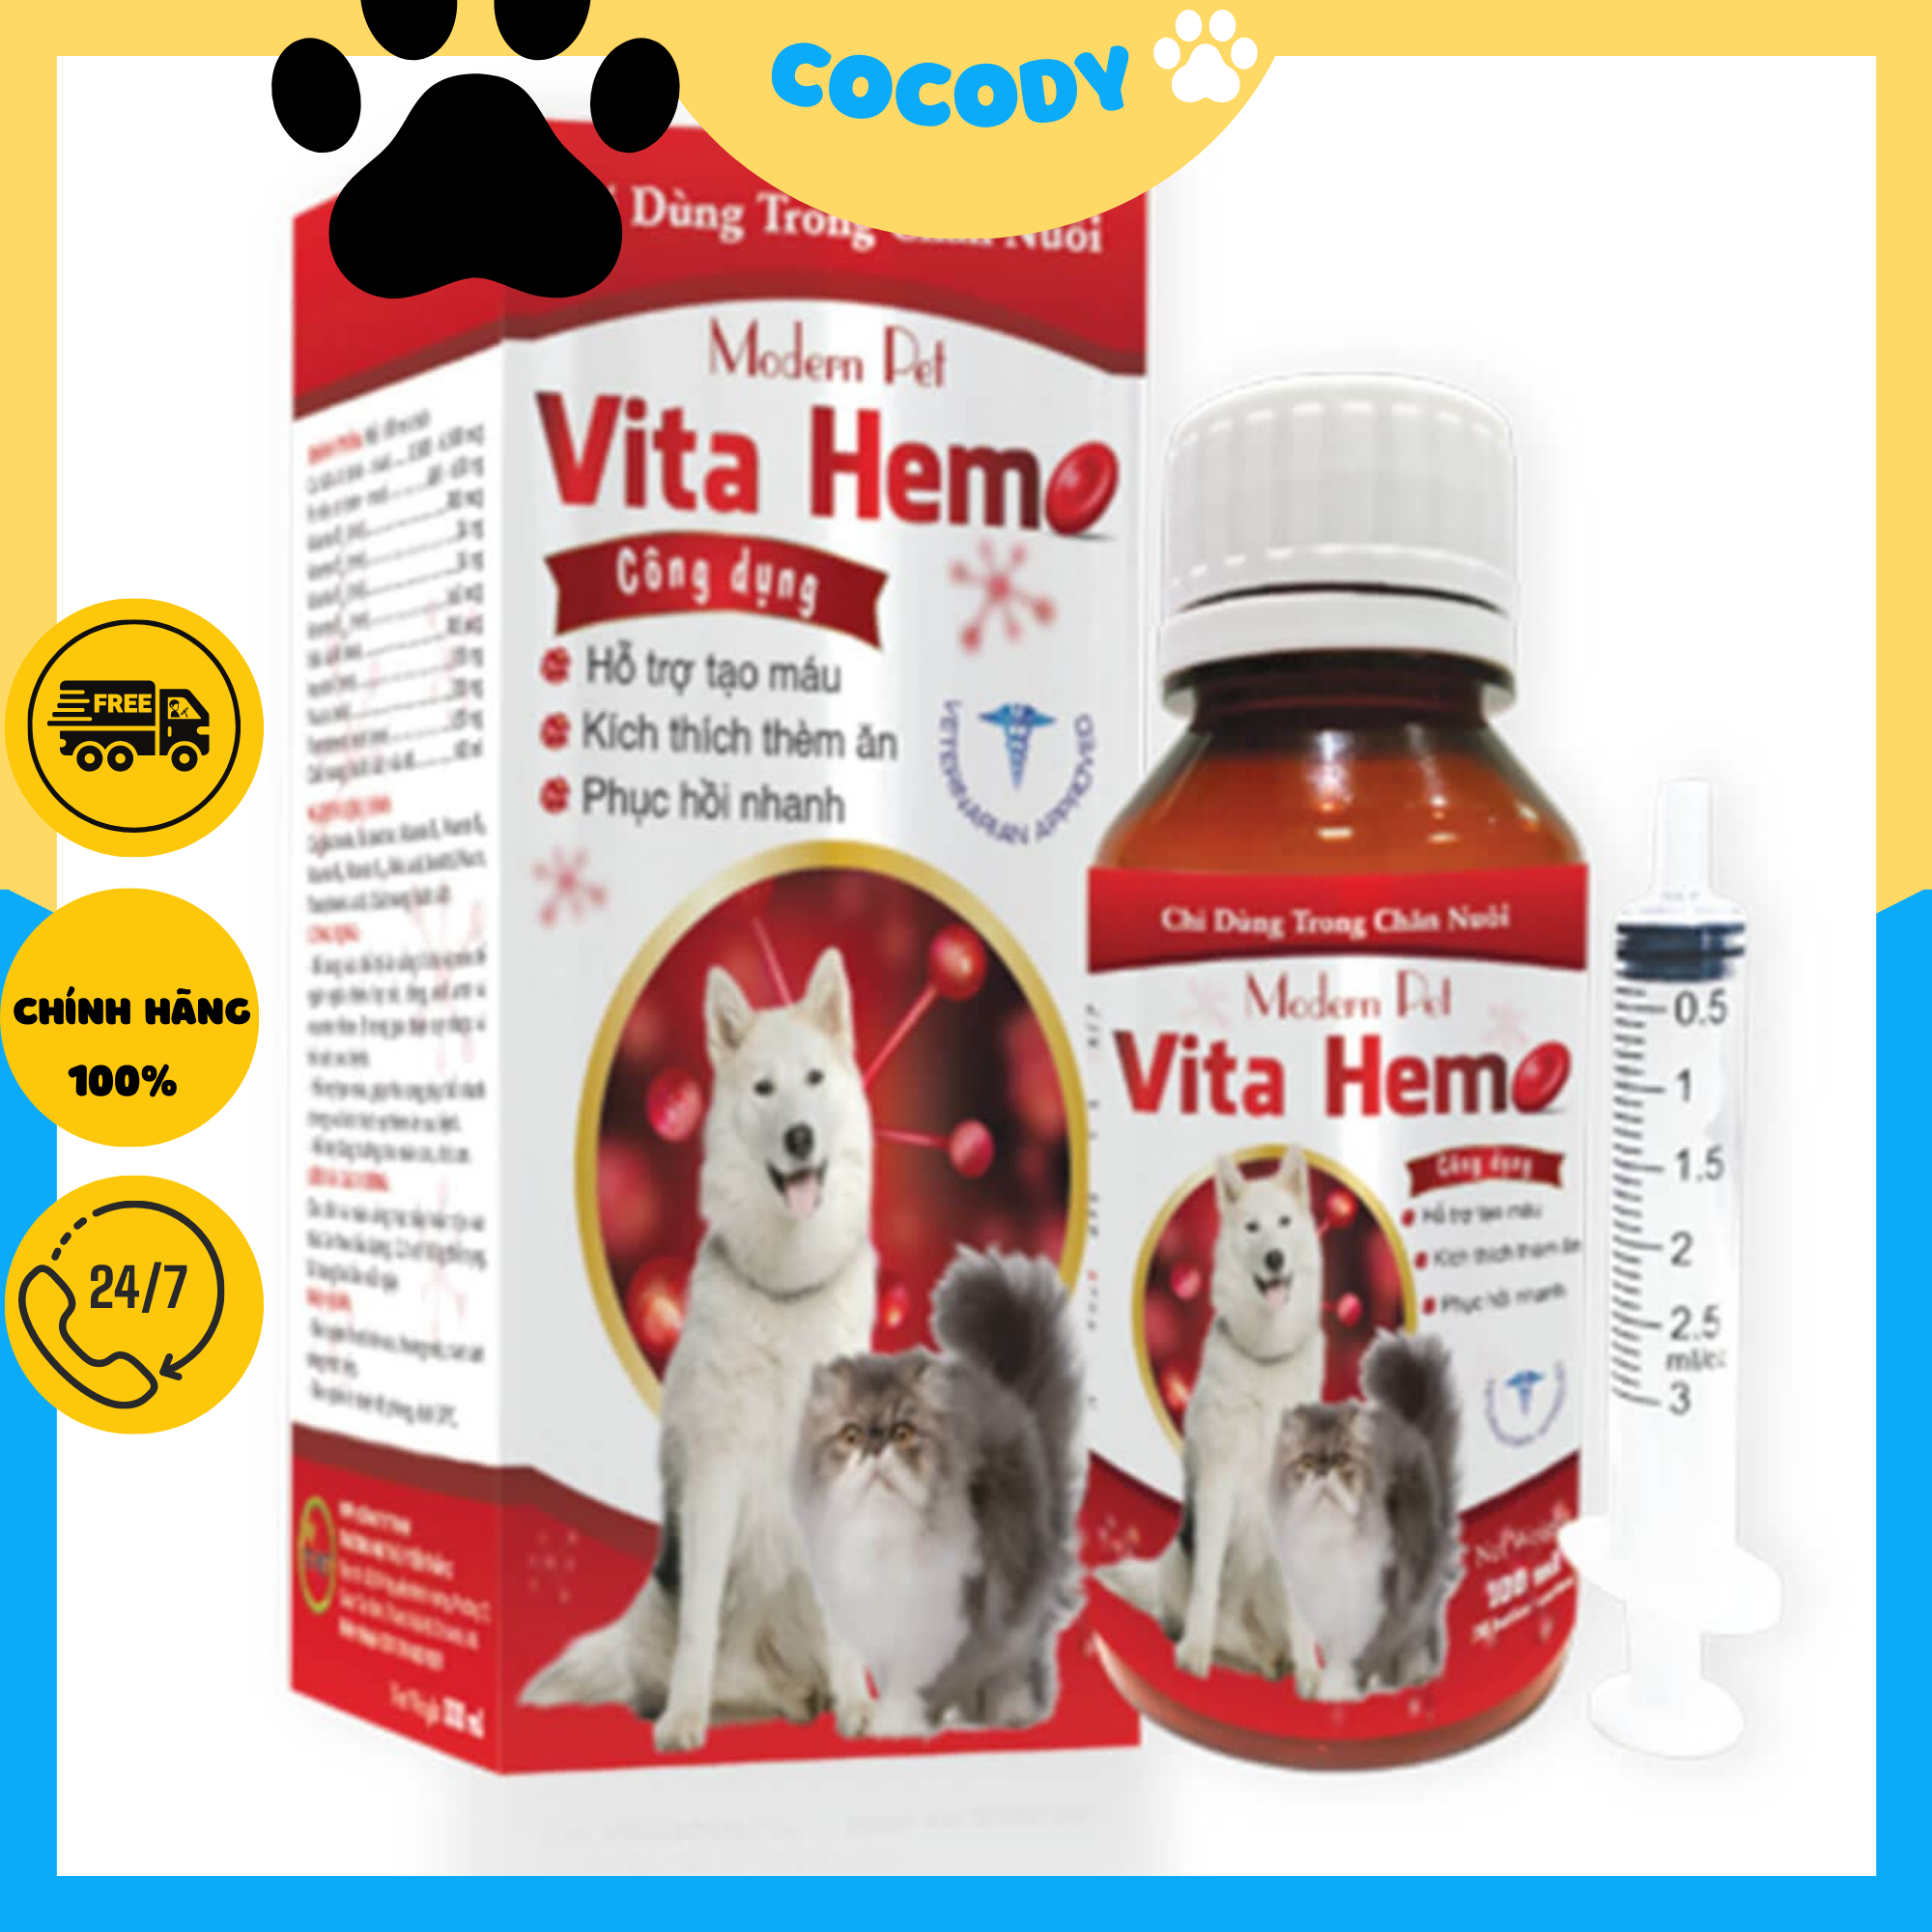 Dung dịch uống Bổ Máu cho chó Modern Pet Vita Hemo. Thực phẩm bổ sung bổ